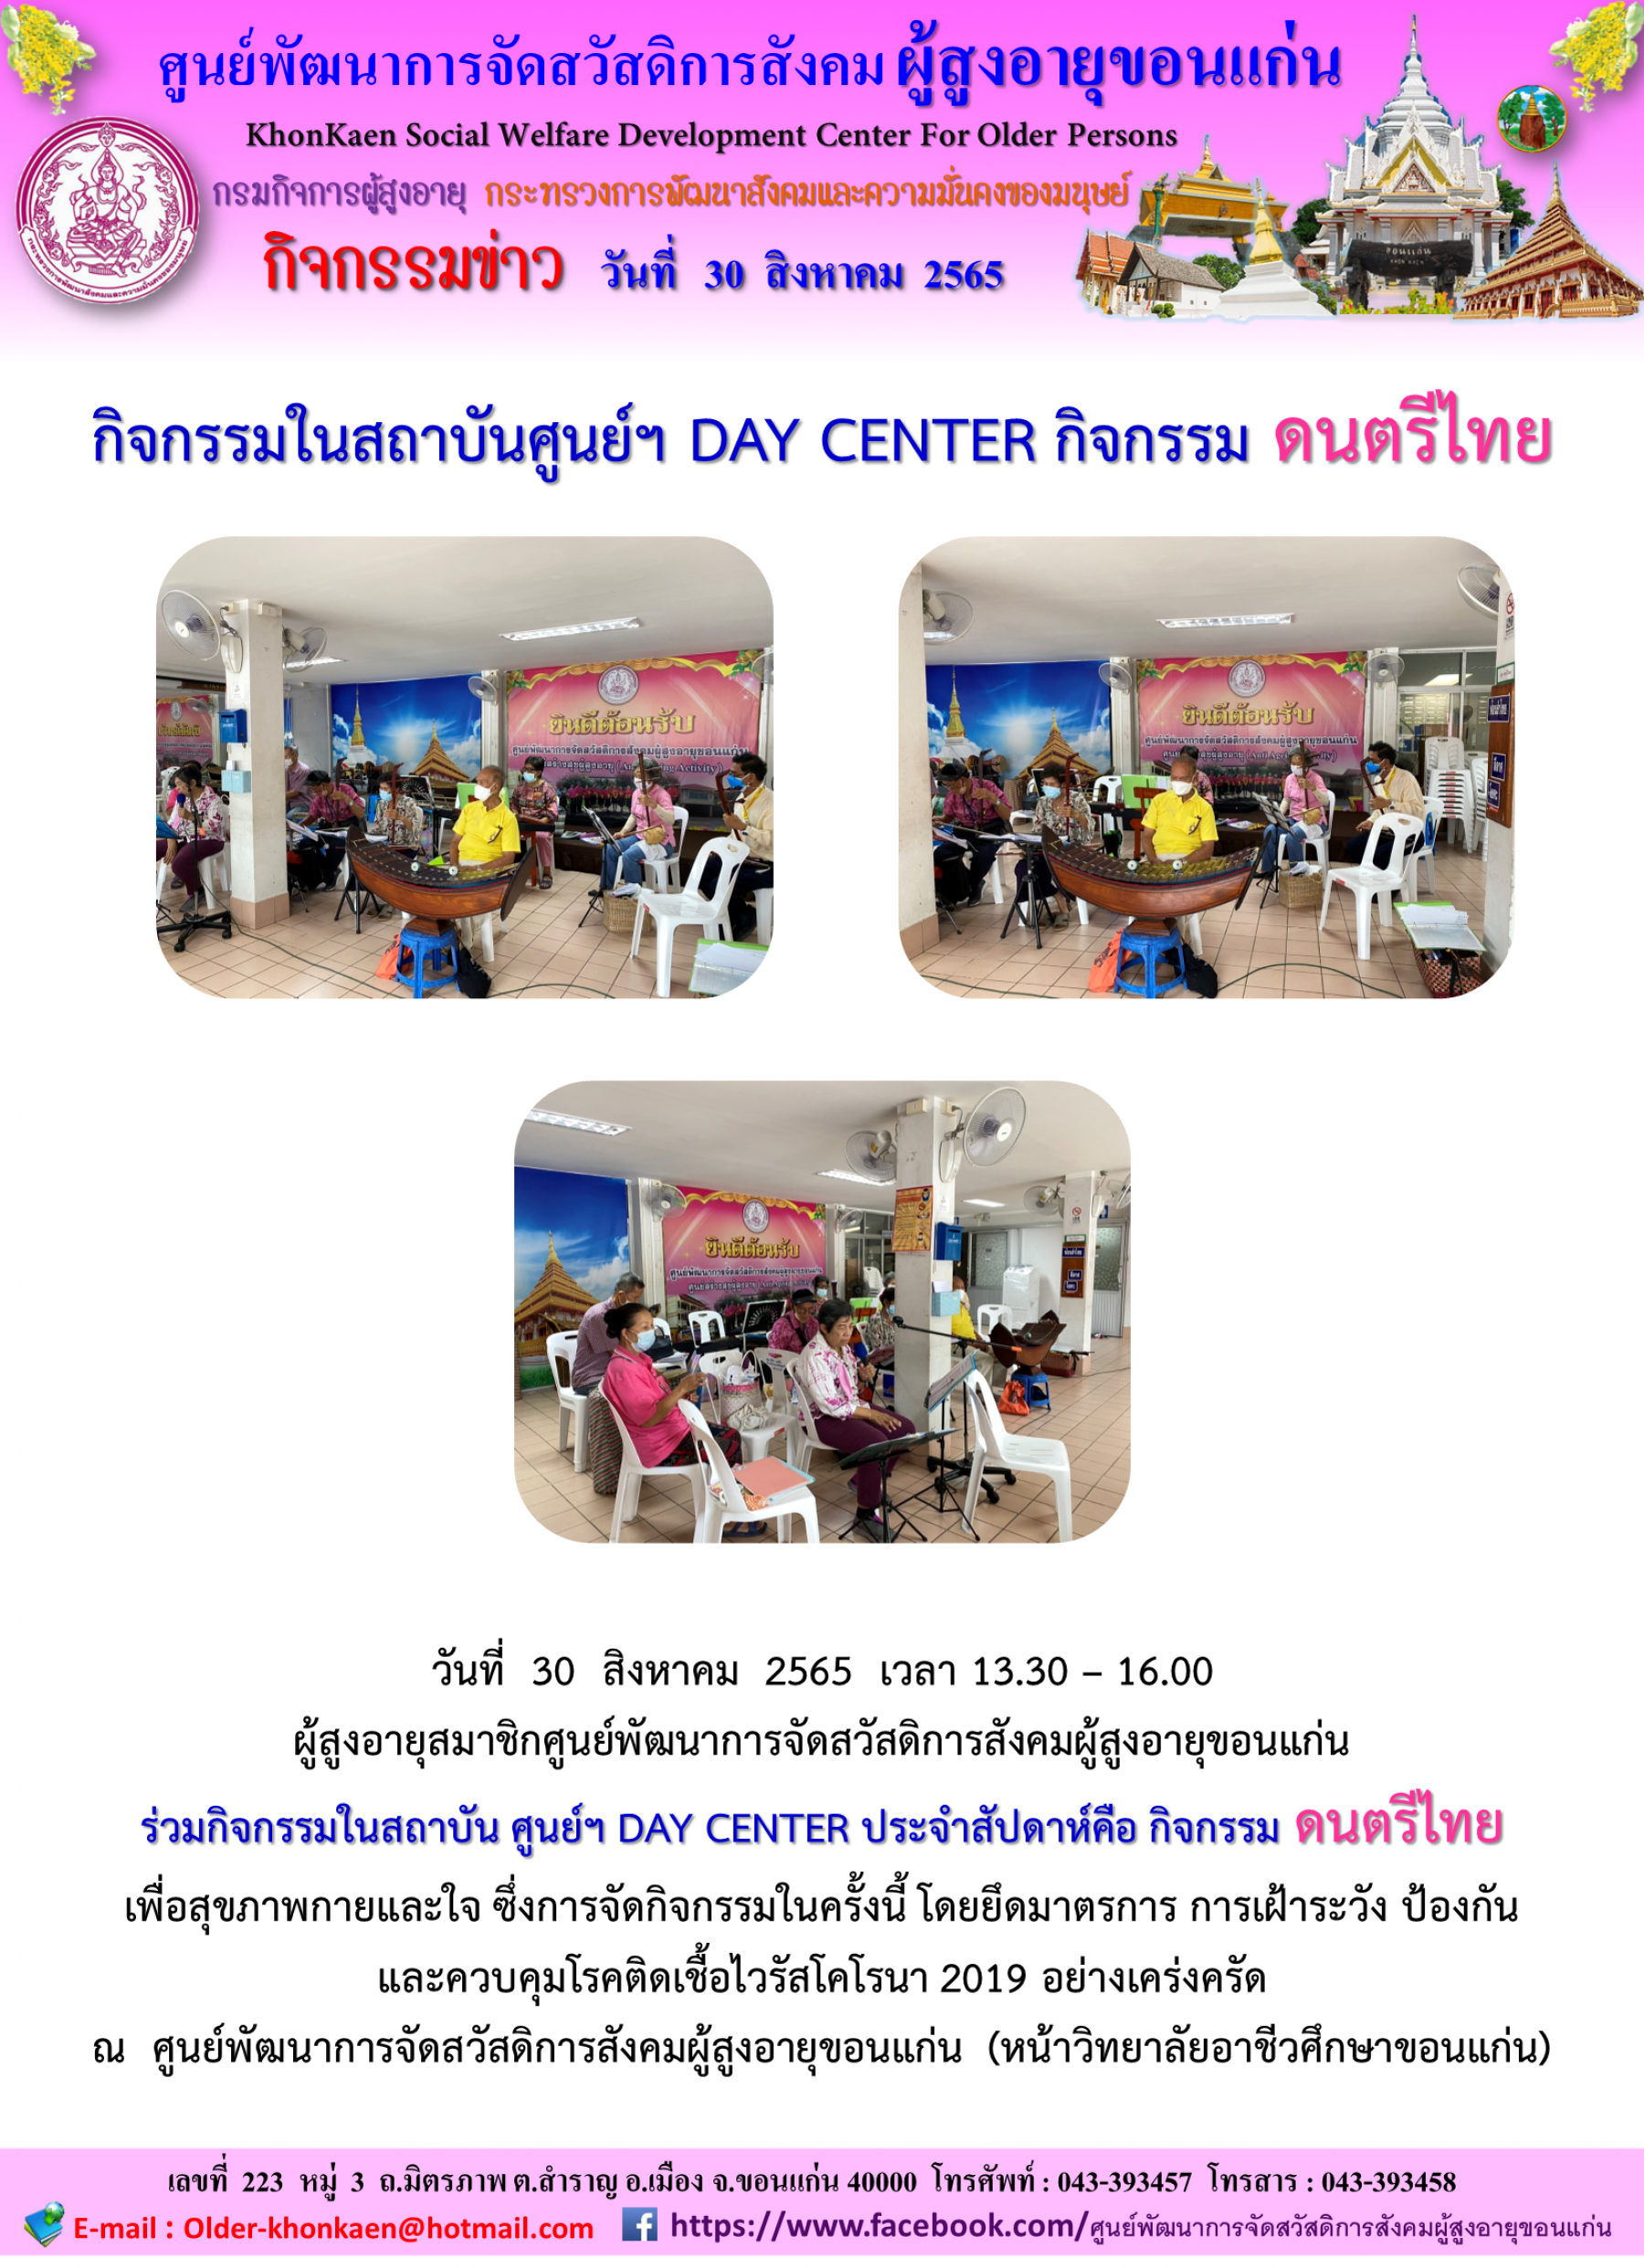 กิจกรรมในสถาบันศูนย์ฯ DAY CENTER กิจกรรมดนตรีไทย